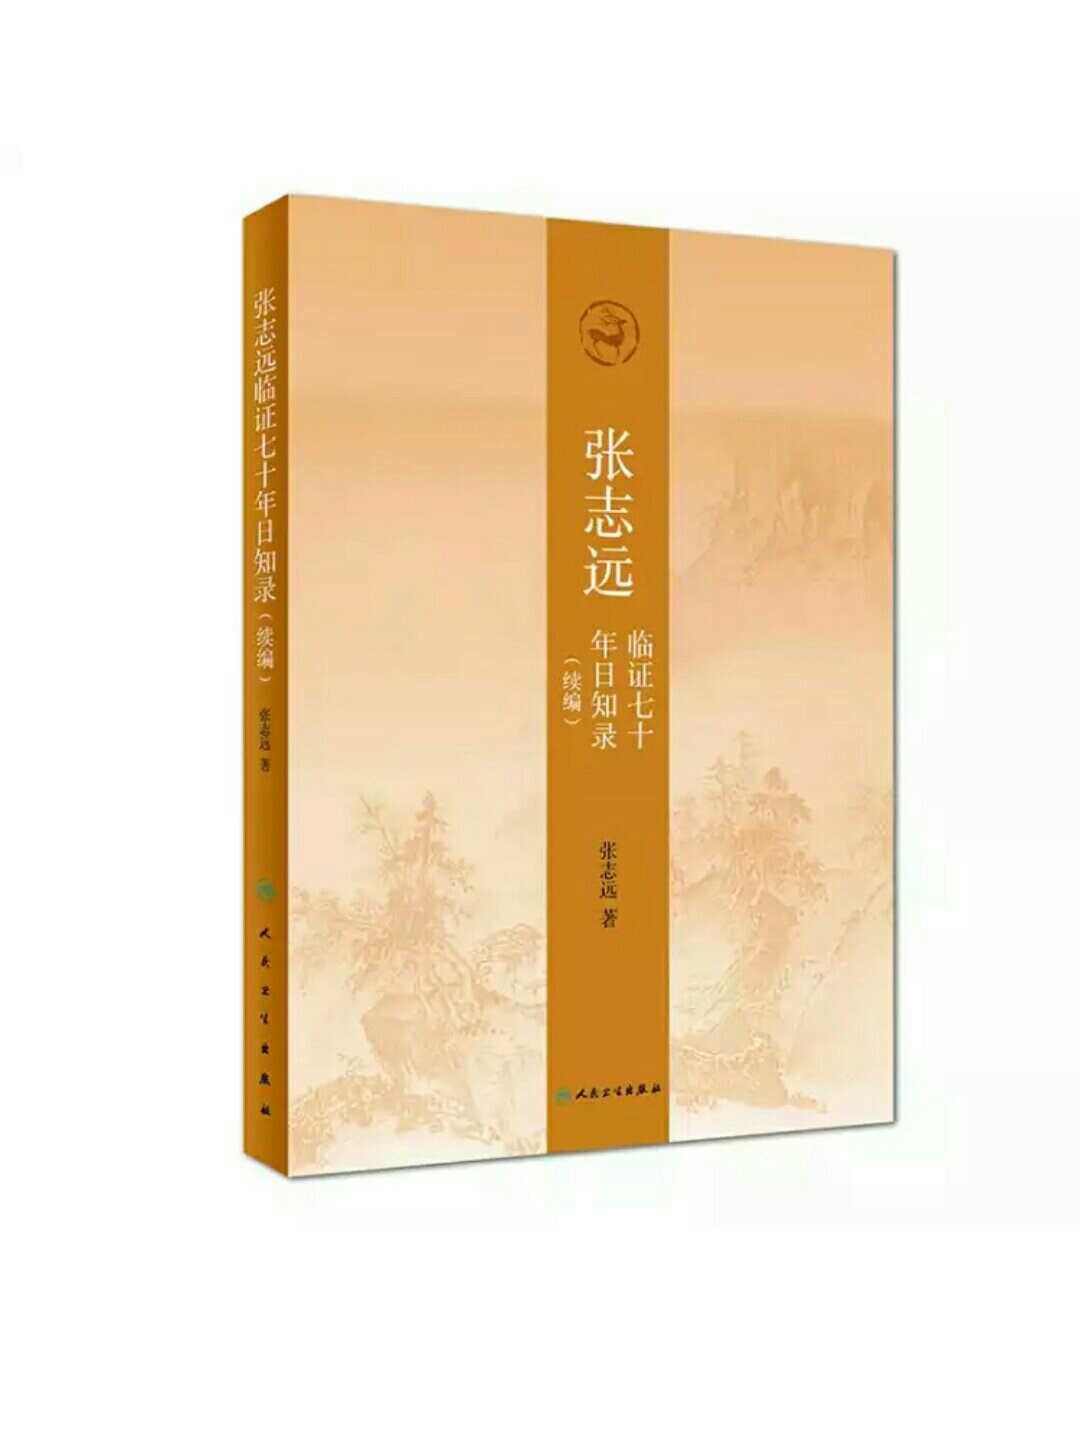 张志远先生家学渊源，这套书是他数十年的临证心得，干货满满，可师可法之处很多，很实在。